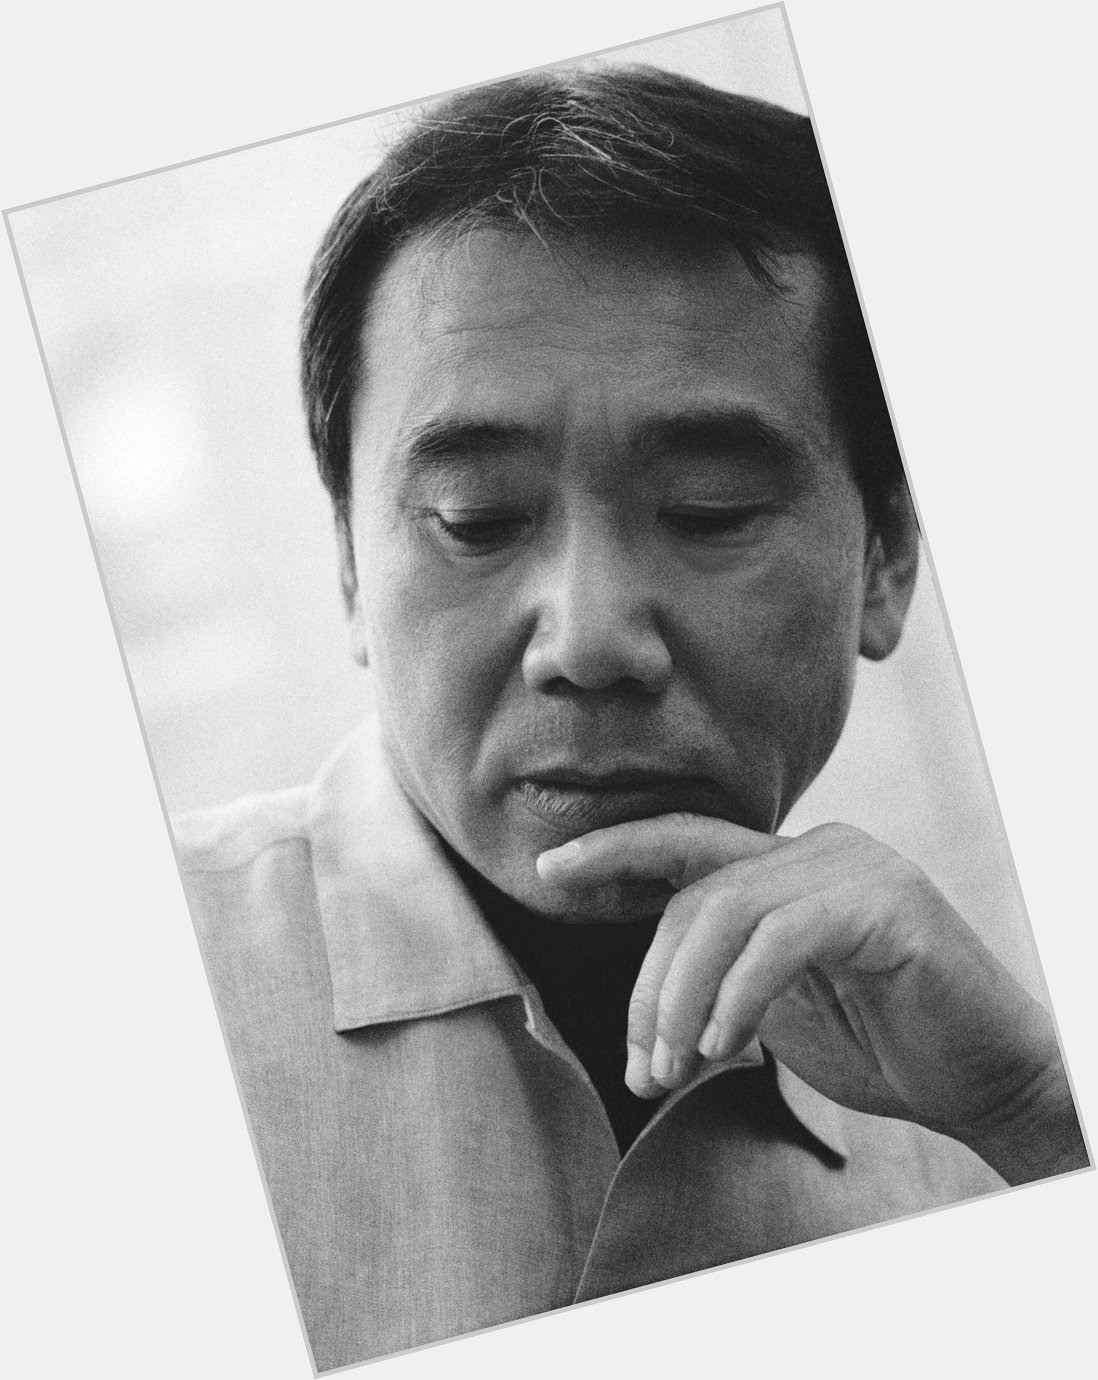 Happy birthday to Haruki Murakami! 